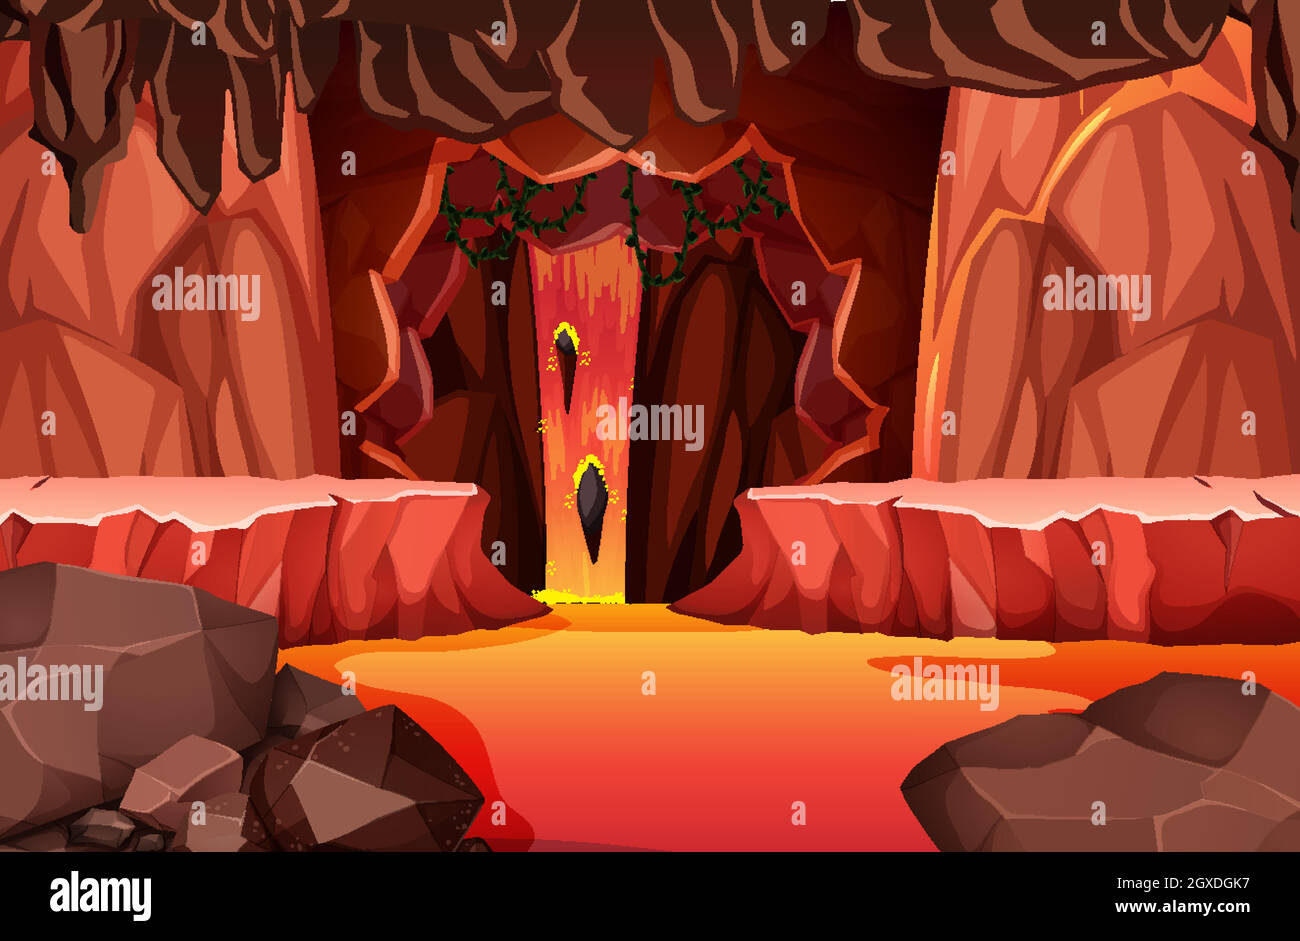 Grotte sombre infernale avec scène de lave Illustration de Vecteur